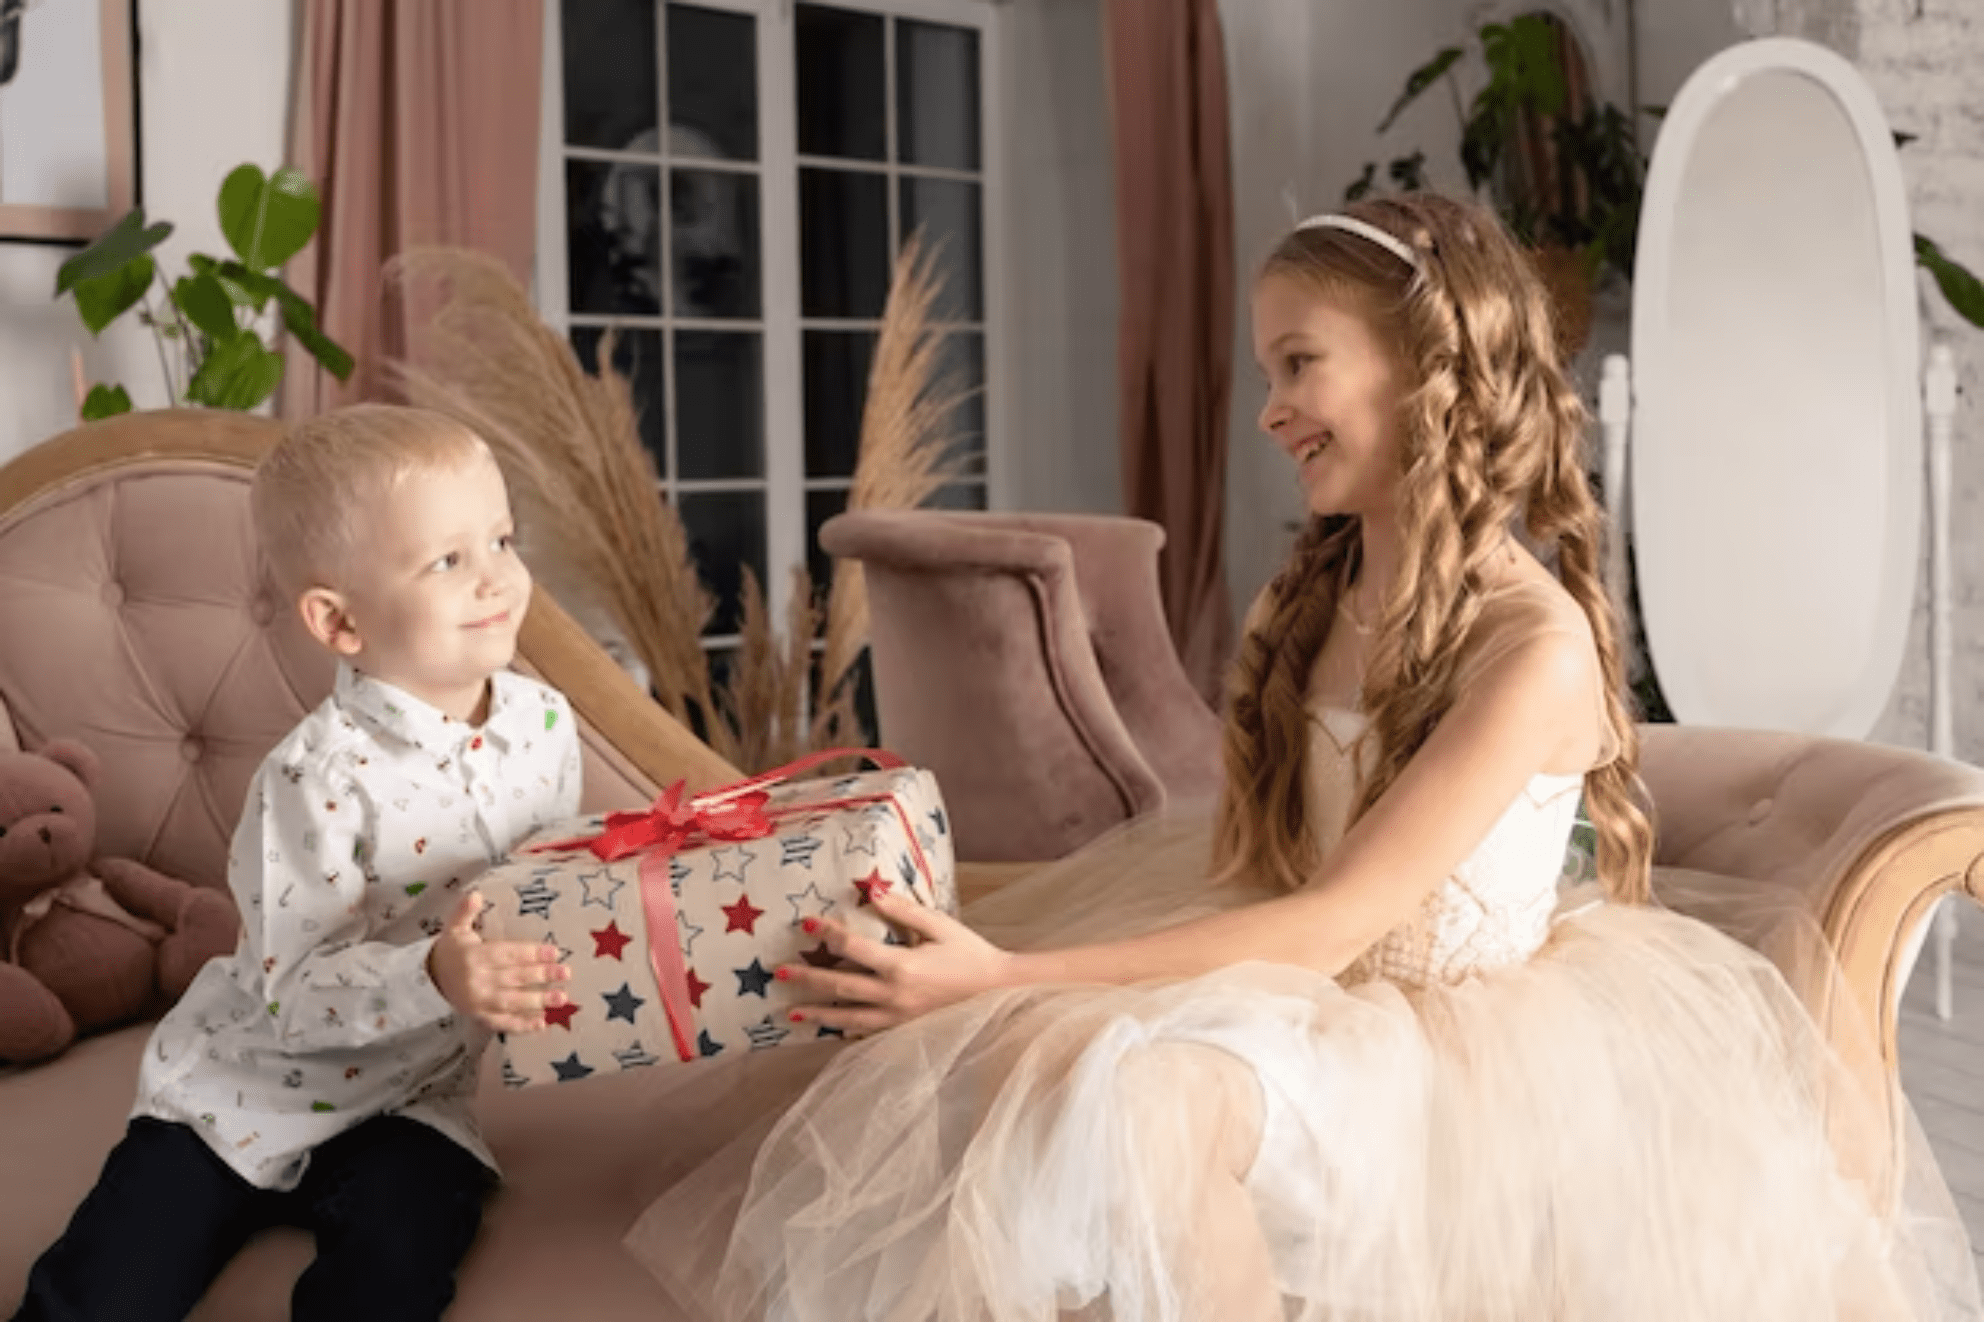 Découvrez des Cadeaux Pour L’anniversaire De Fille 9 Ans Formidales pour Réaliser Son Rêve De Princesse